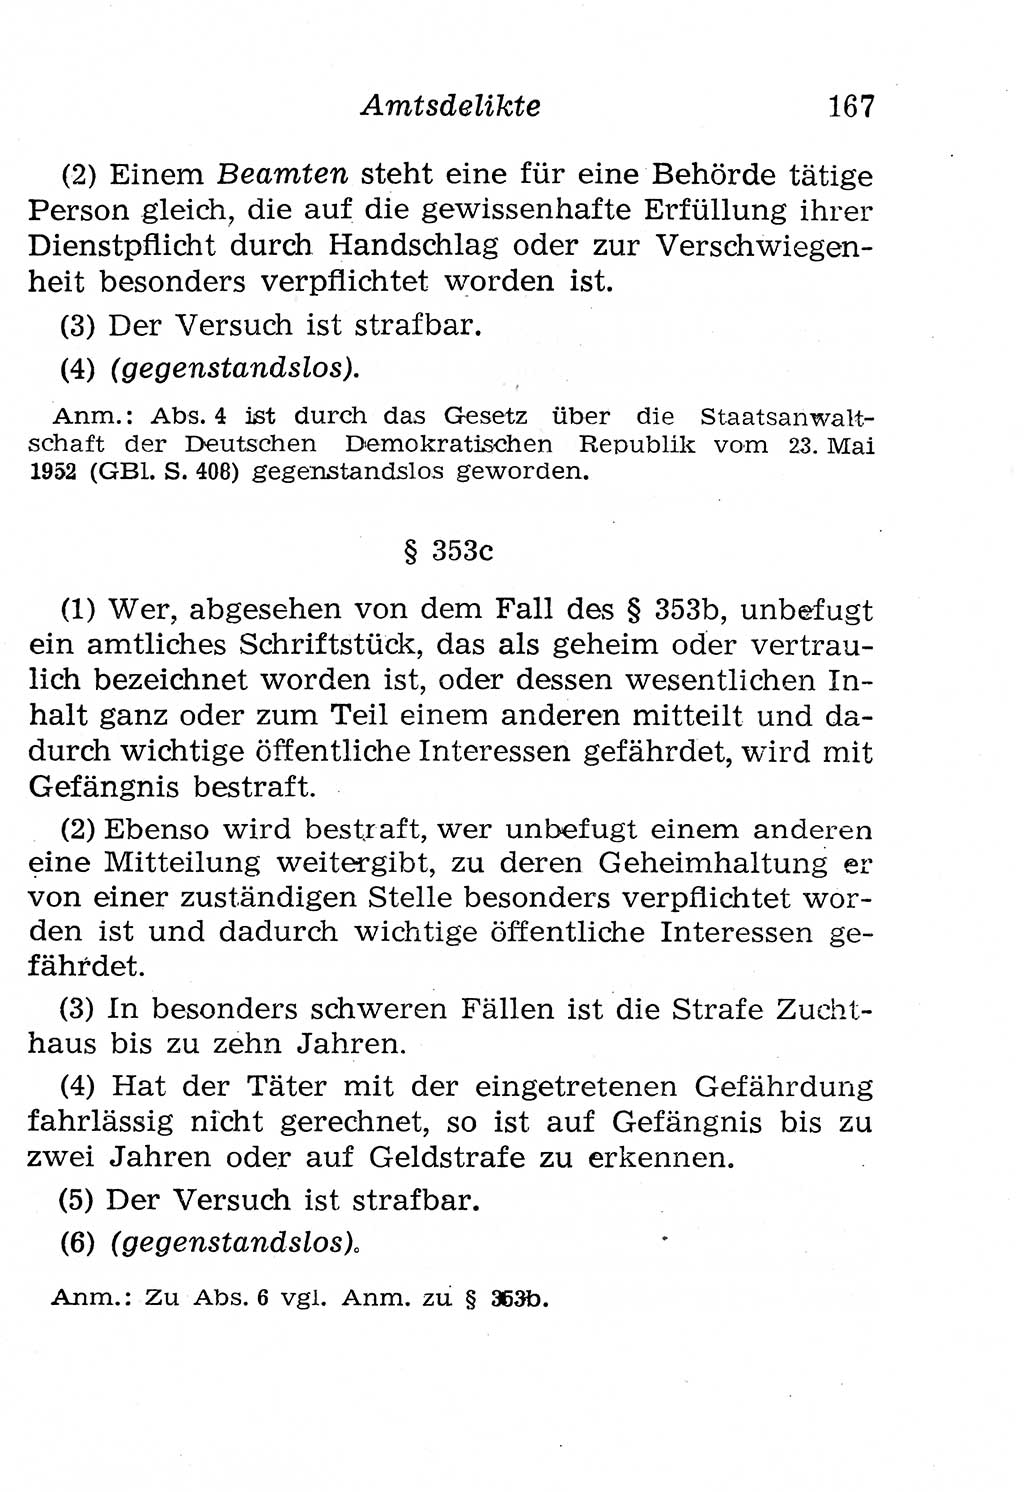 Strafgesetzbuch (StGB) und andere Strafgesetze [Deutsche Demokratische Republik (DDR)] 1958, Seite 167 (StGB Strafges. DDR 1958, S. 167)